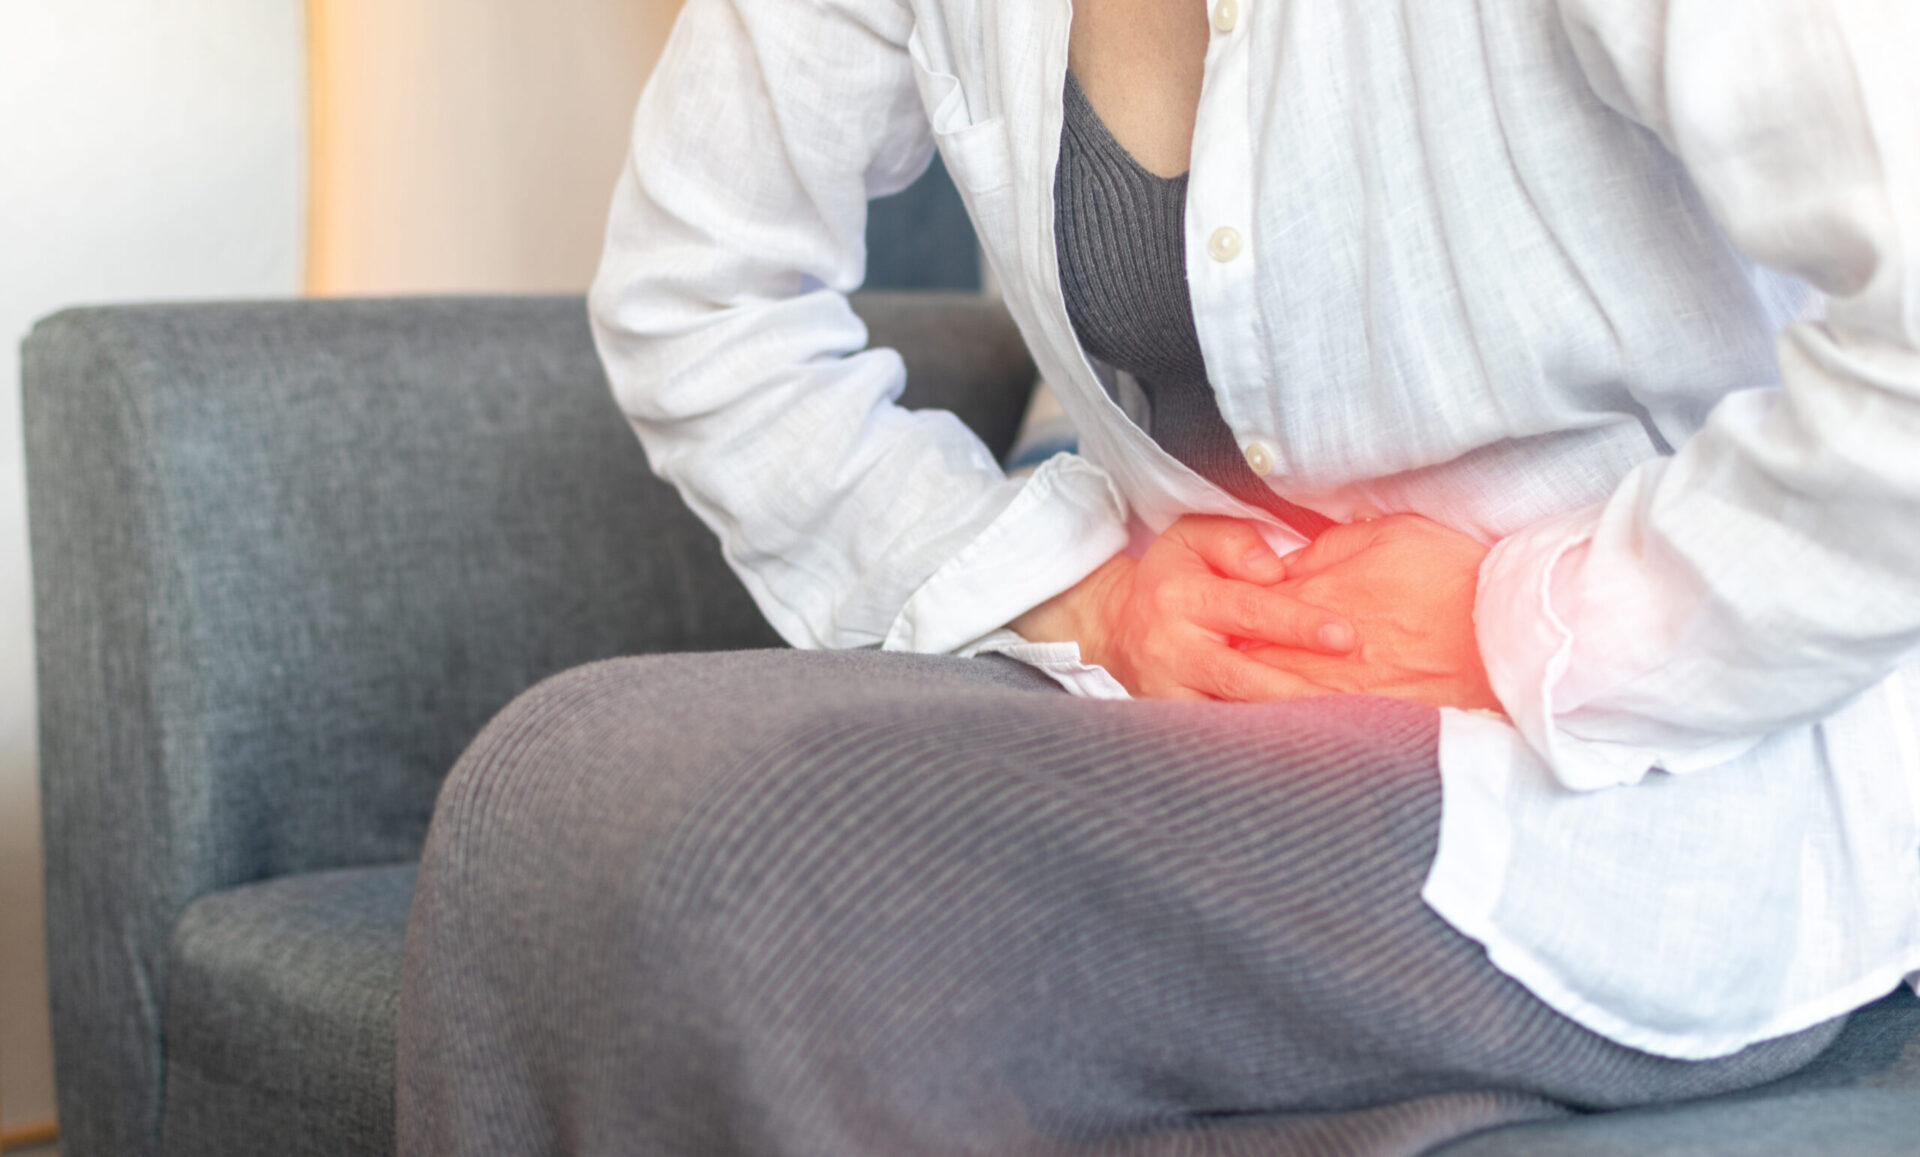 Ręce młodej kobiety na brzuchu jako oznaka bólu związana z bolesnymi miesiączkami, niestrawnością, problemami układu pokarmowego, biegunką lub chorobami układu rozrodczego u kobiet.